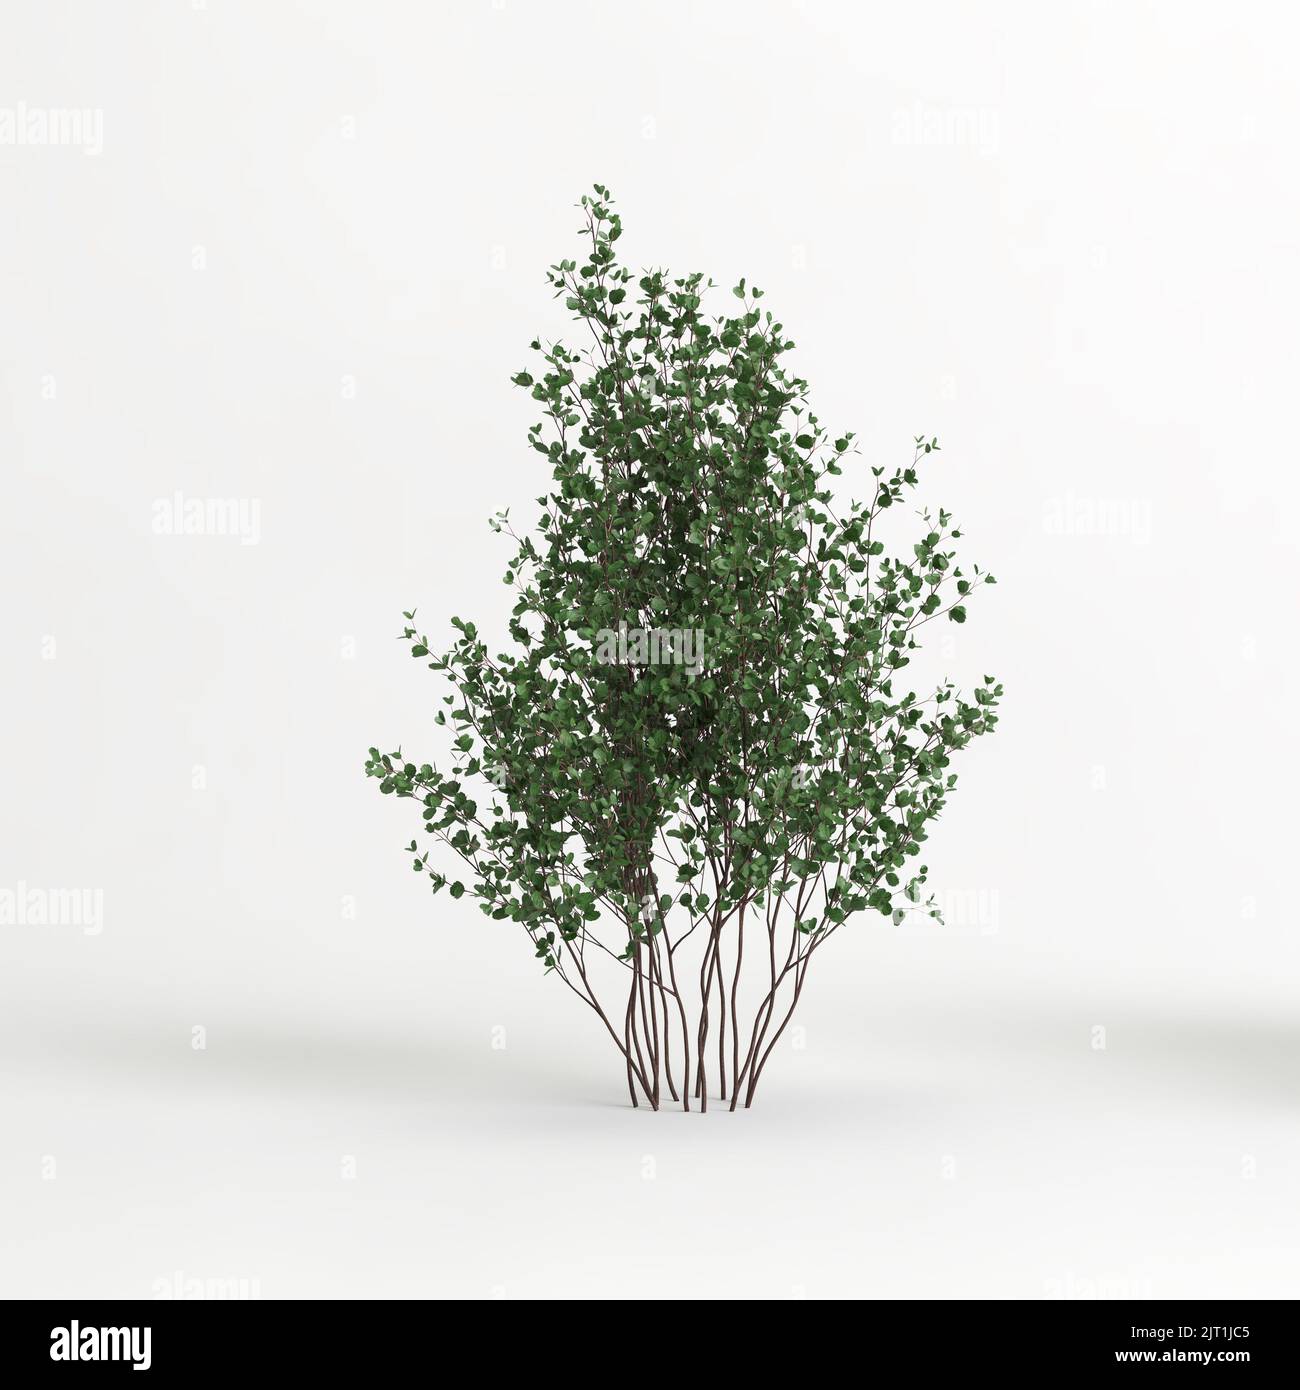 3d illustration of betula pumila tree isolated on white background Stock Photo